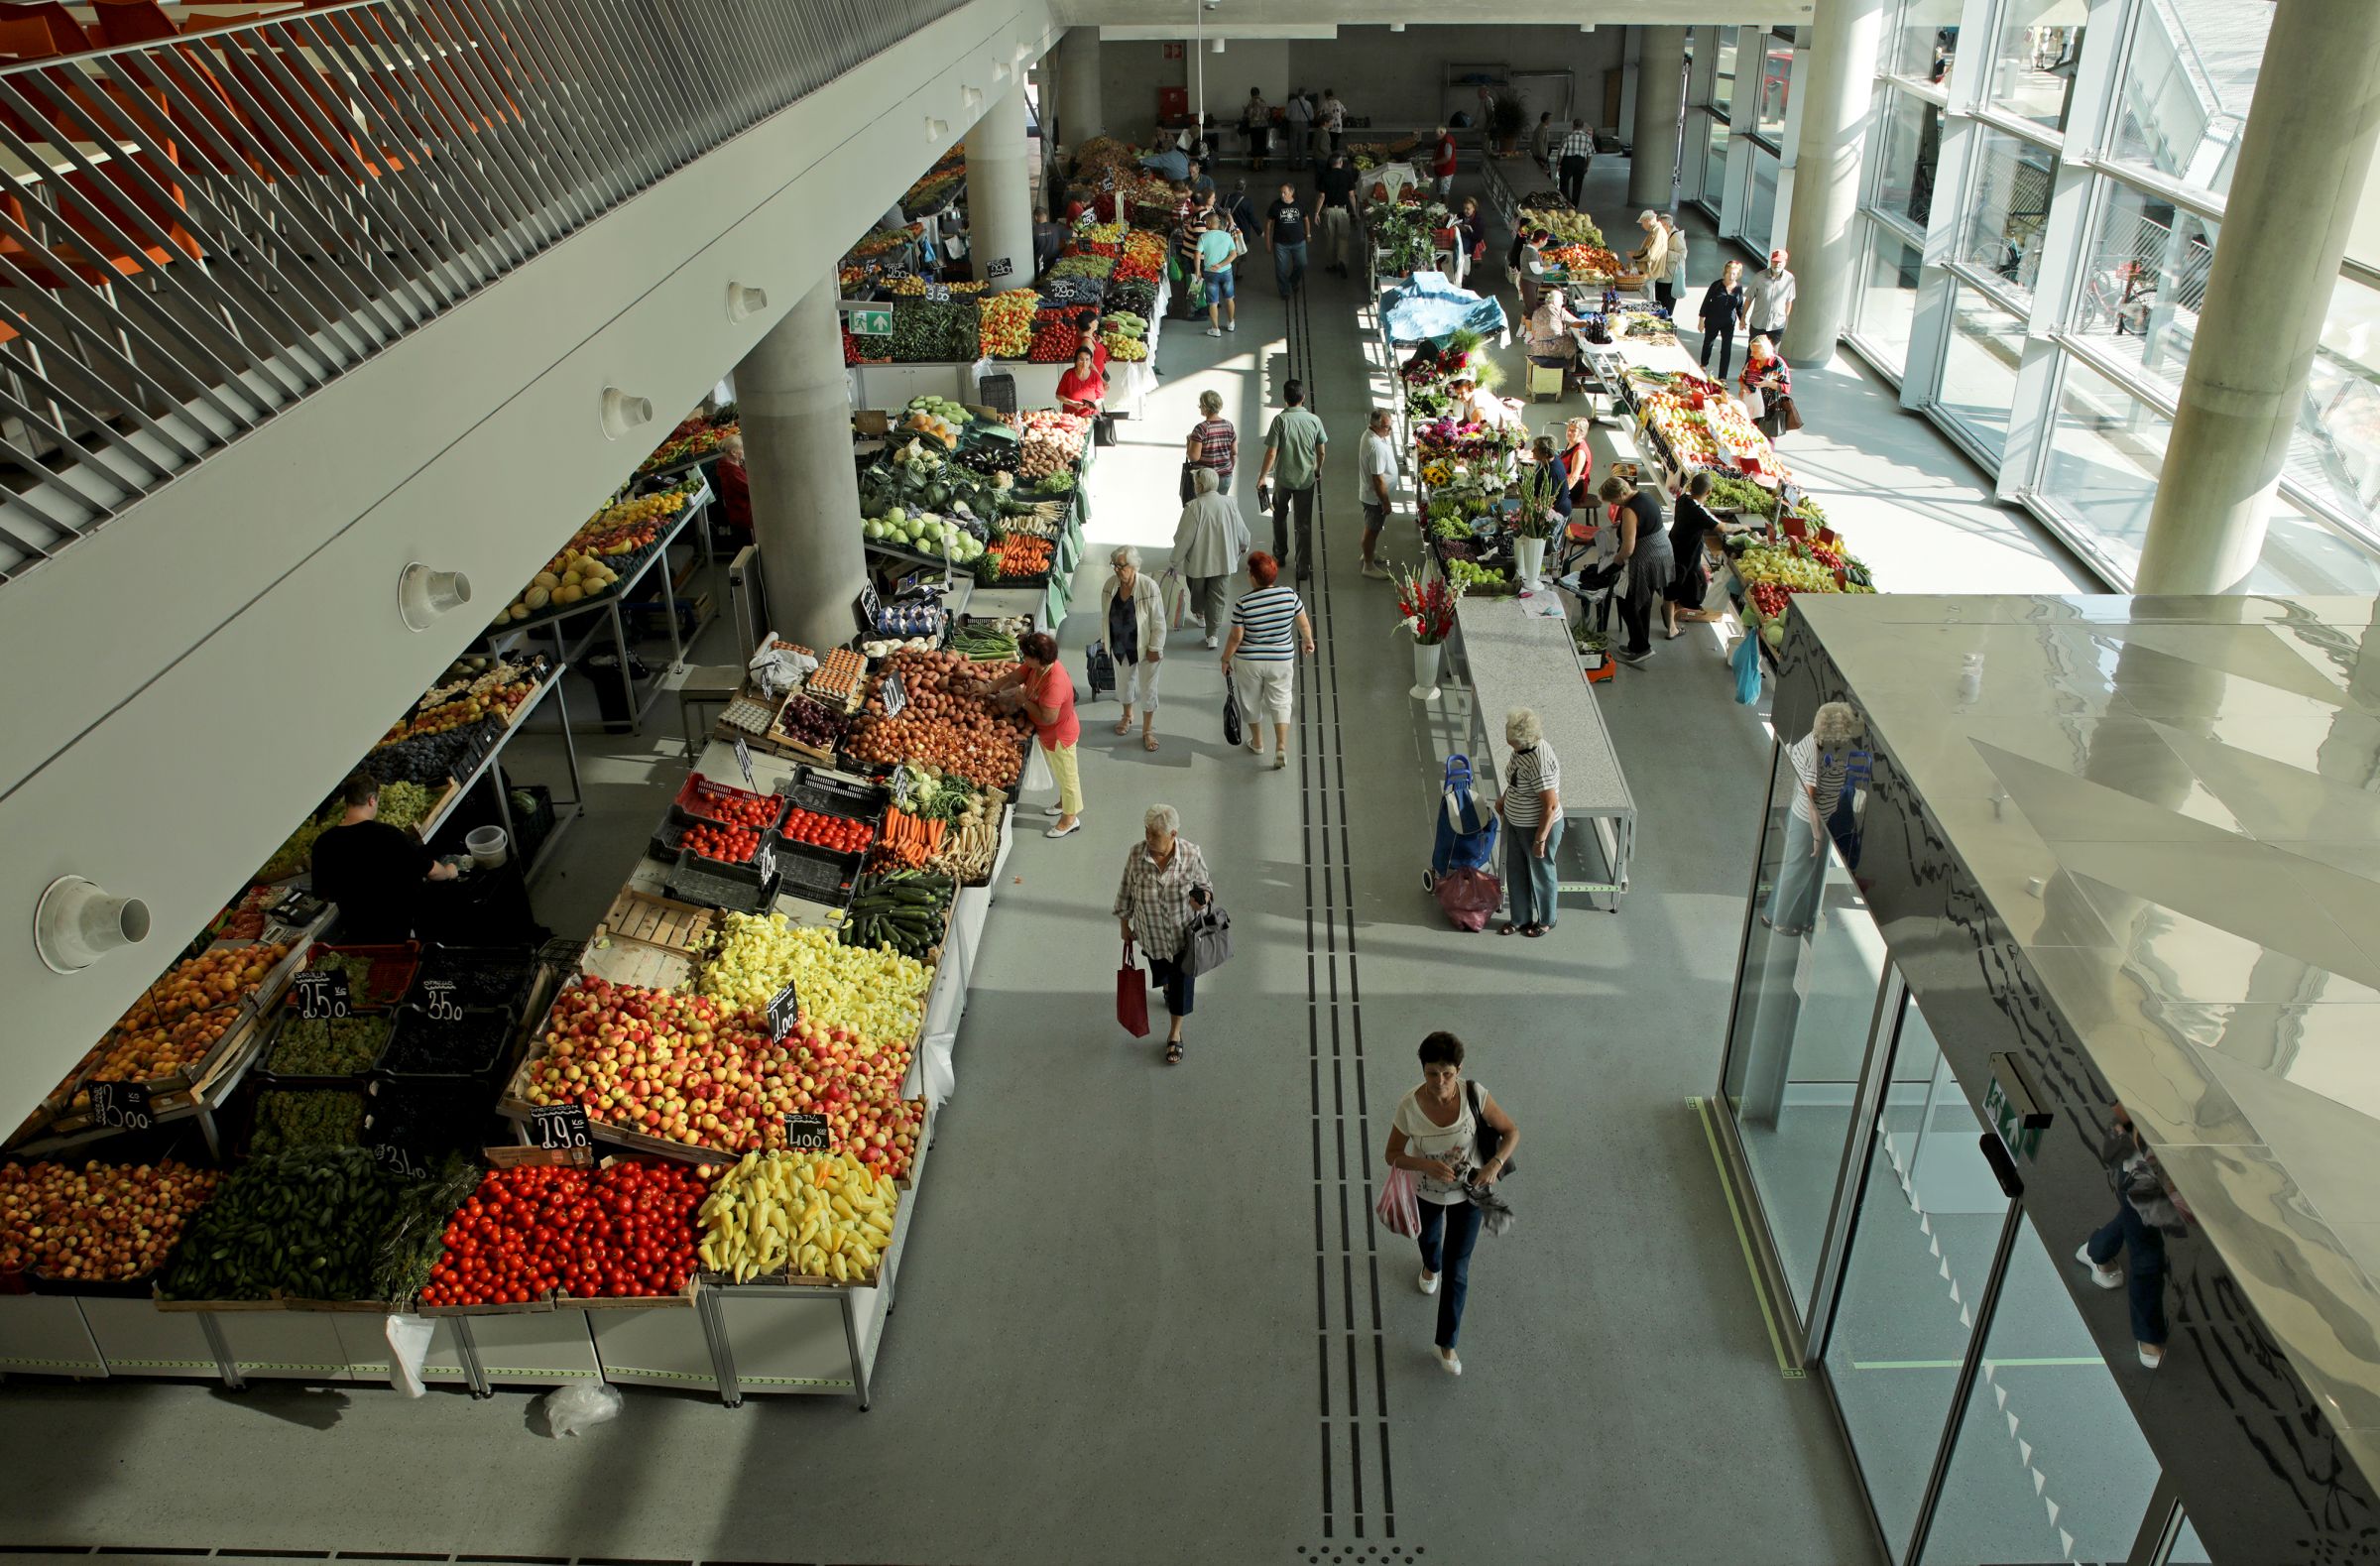 Zöldségek és kultúra egy helyen – egyedülálló piaccal gazdagodott Újpest